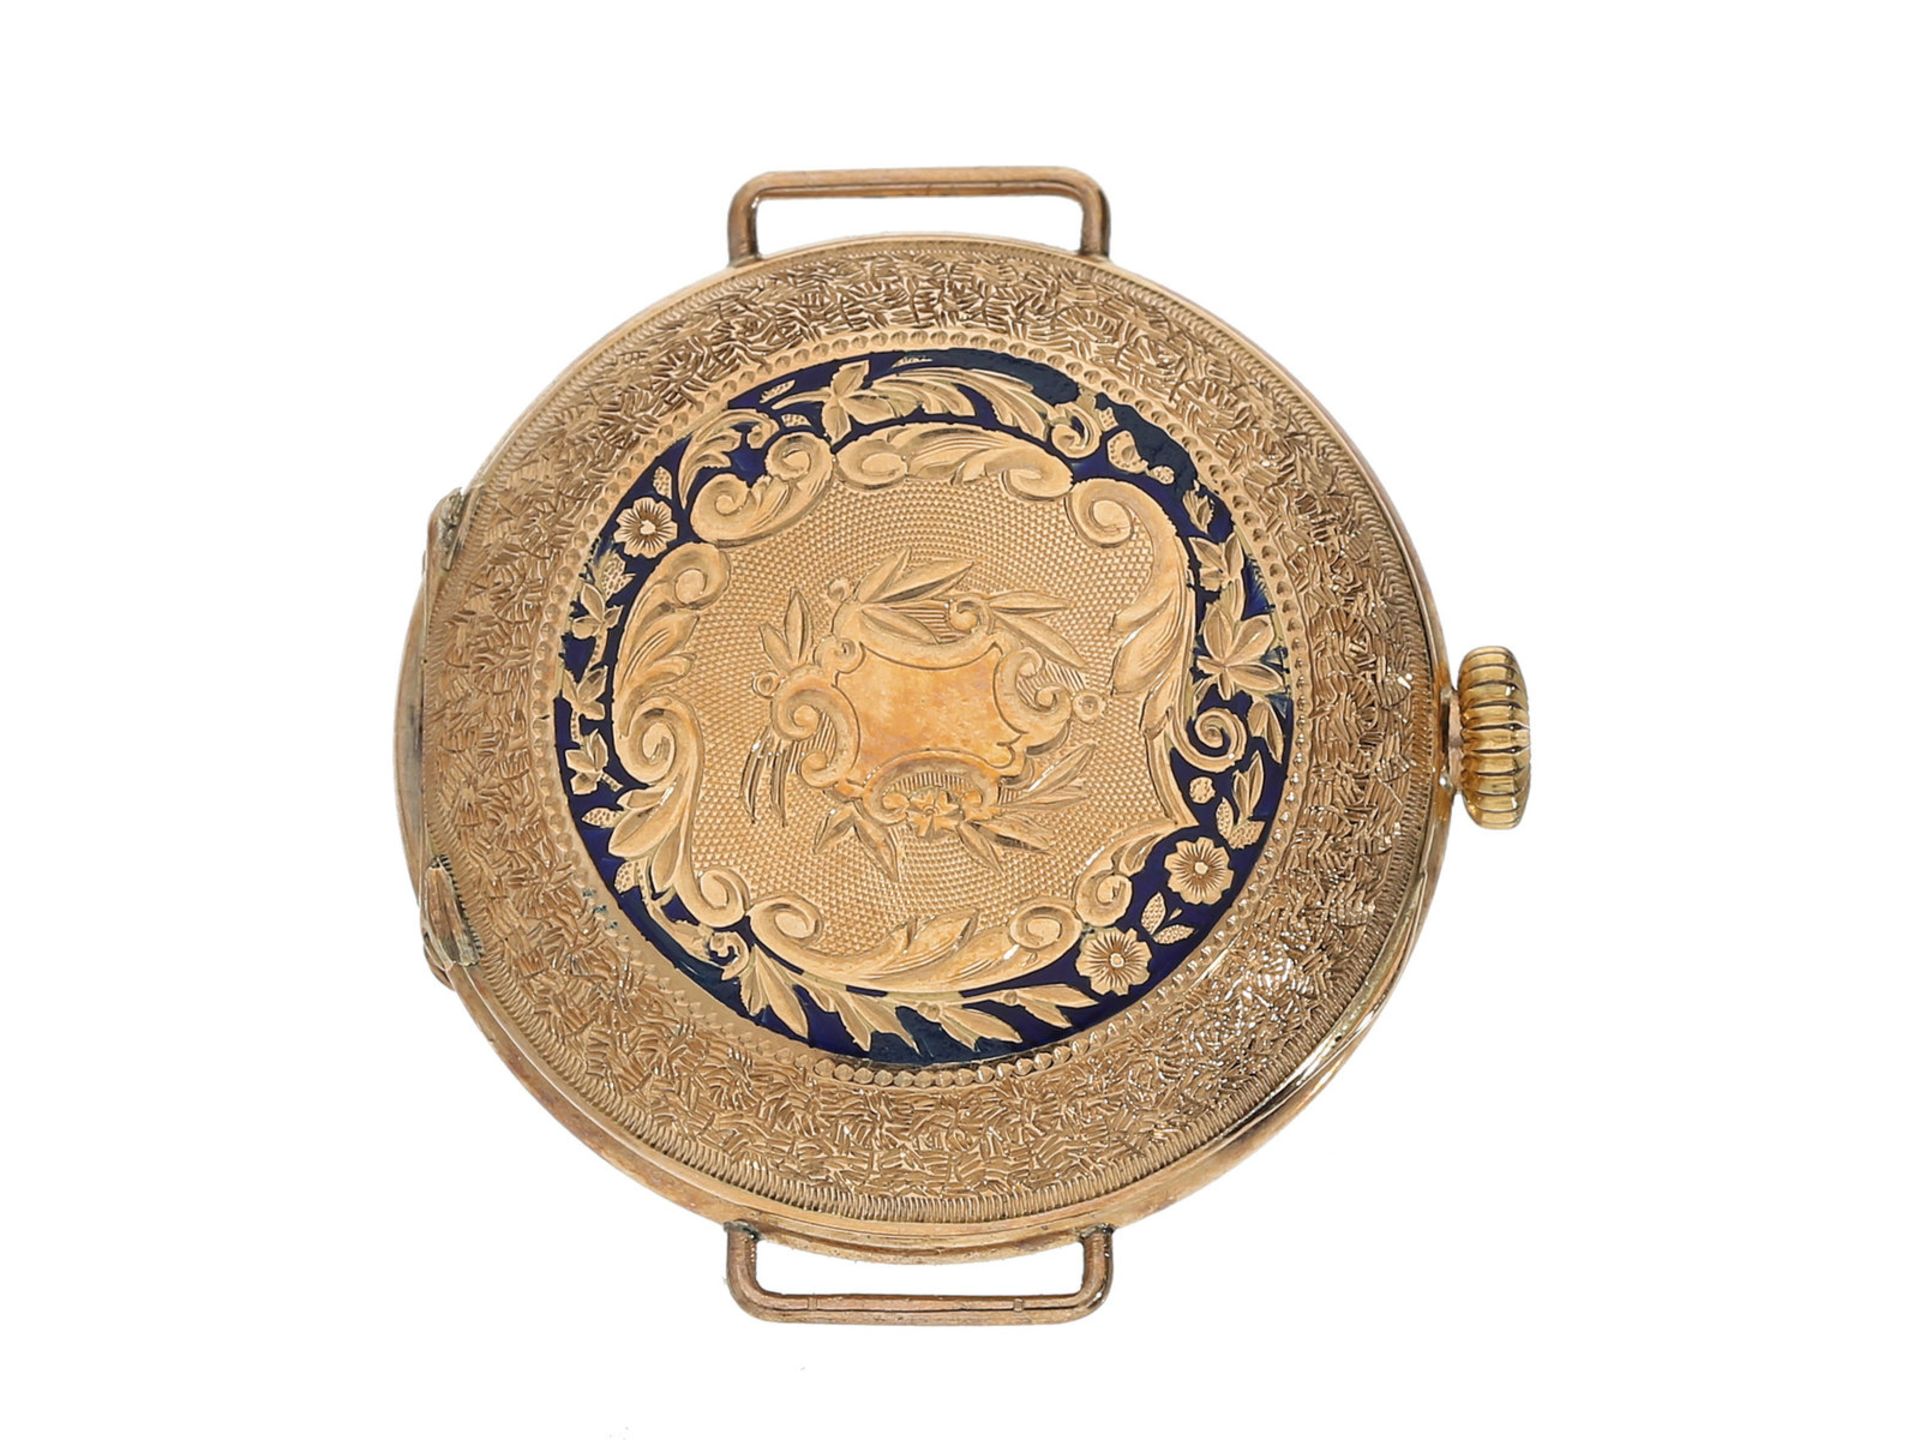 Armbanduhr: Rarität, eine der frühesten Armbanduhren mit hochwertigem Gold/Emaille-Gehäuse in der - Bild 2 aus 5